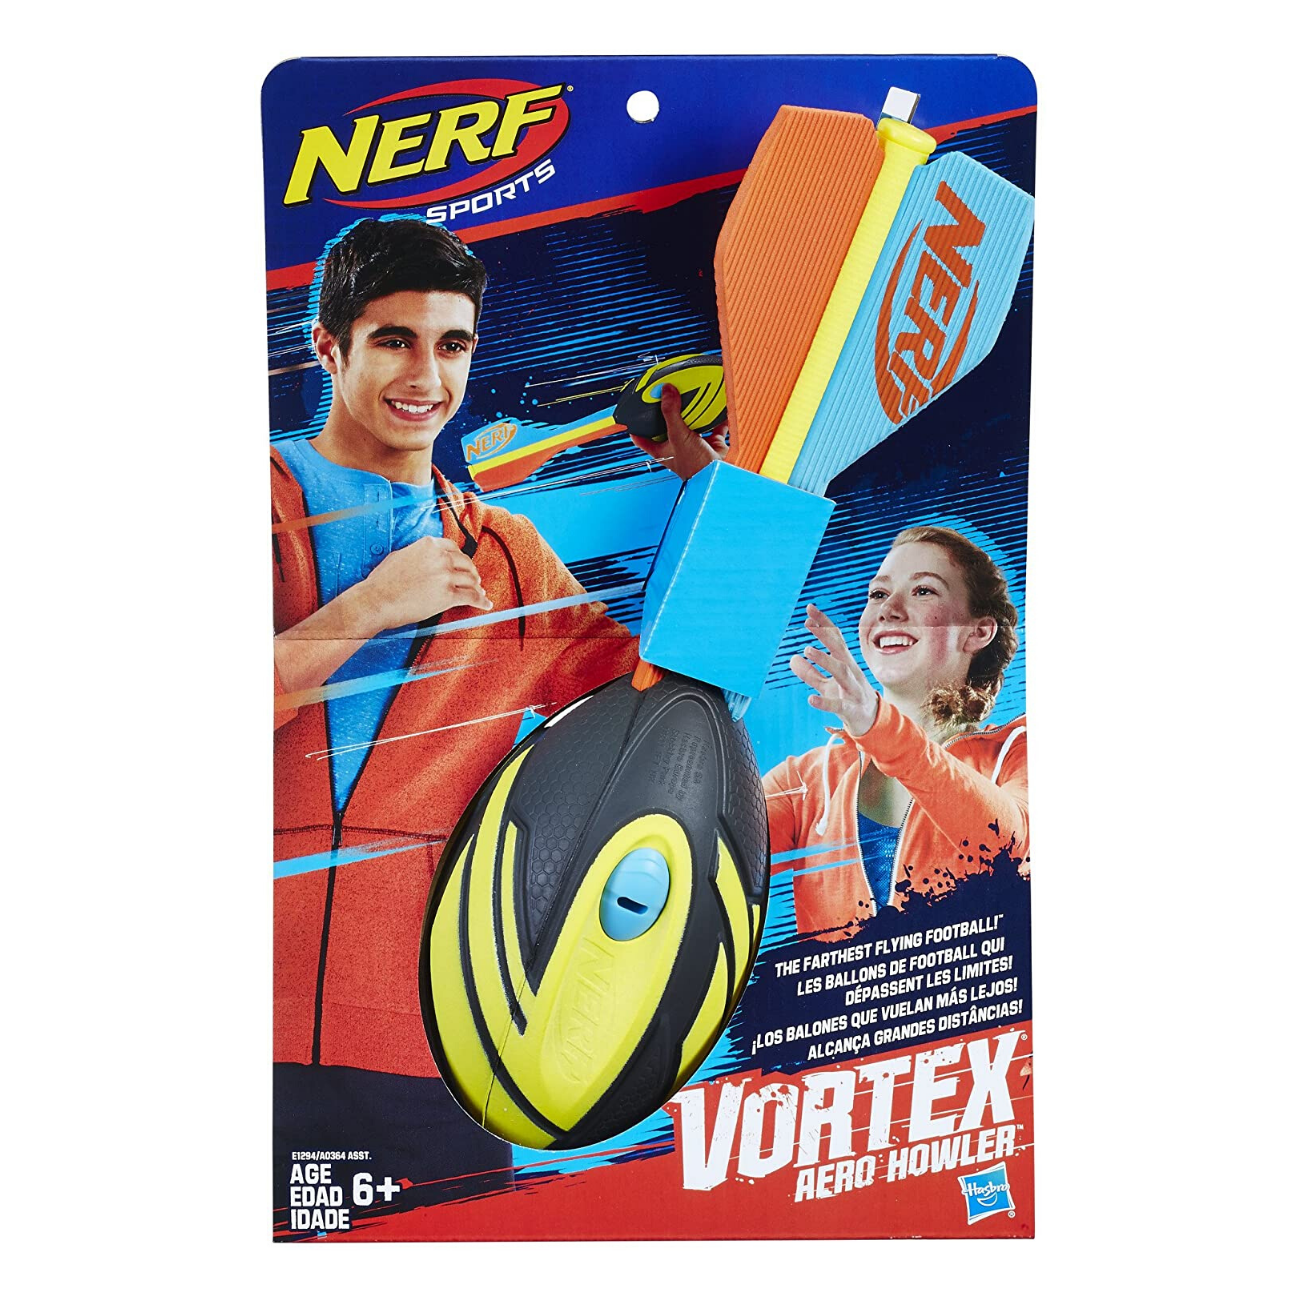 Nerf Vortex Howler – Child's Play